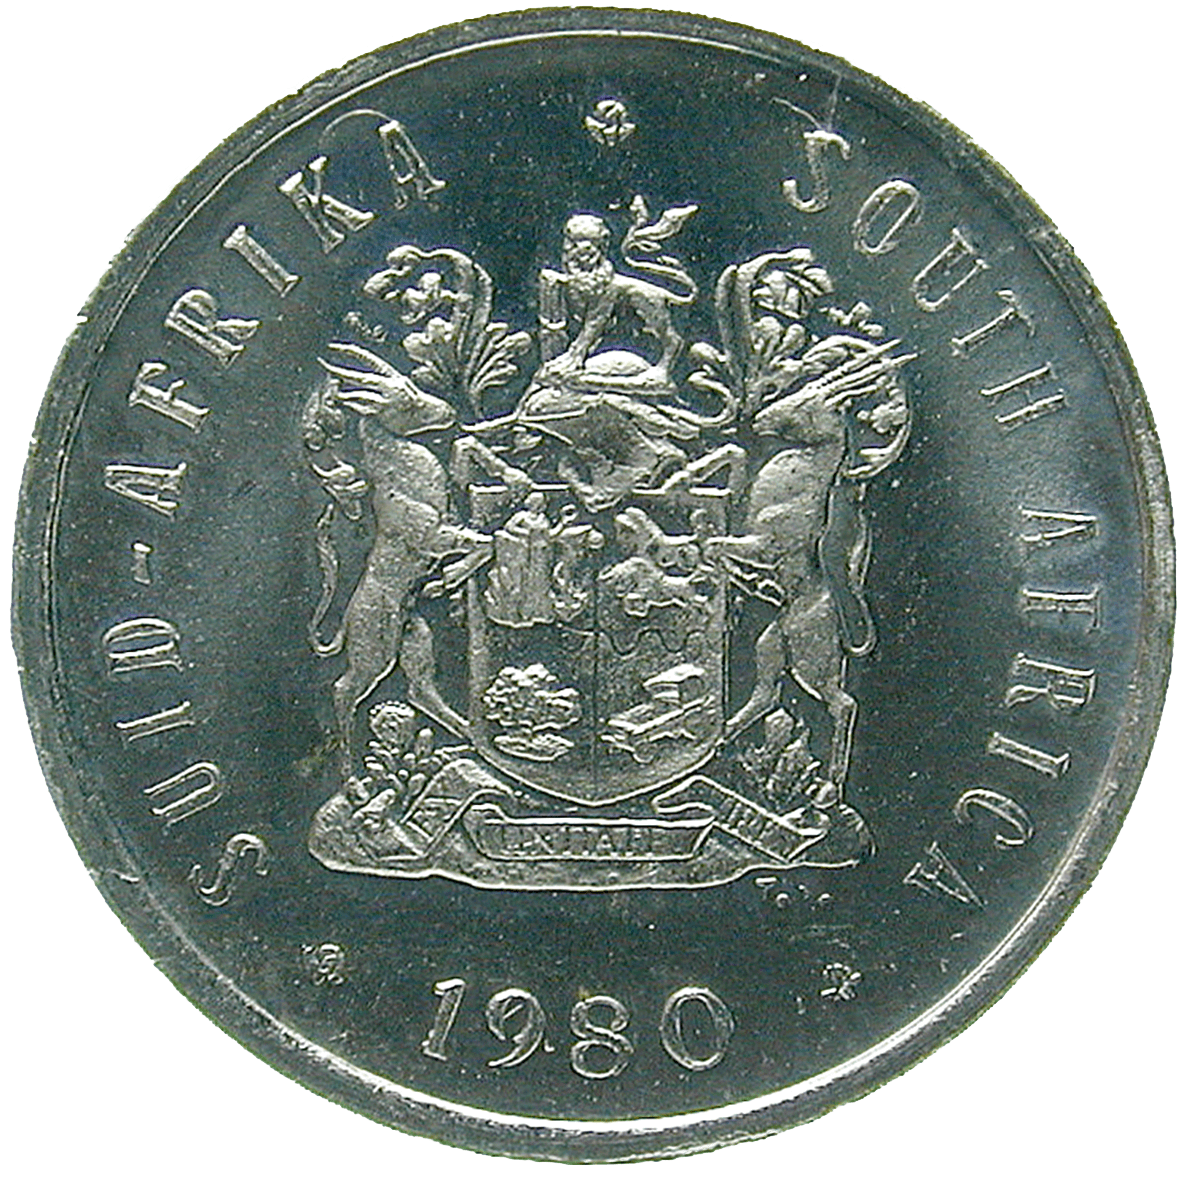 Republik Südafrika, 5 Cent 1980 (obverse)